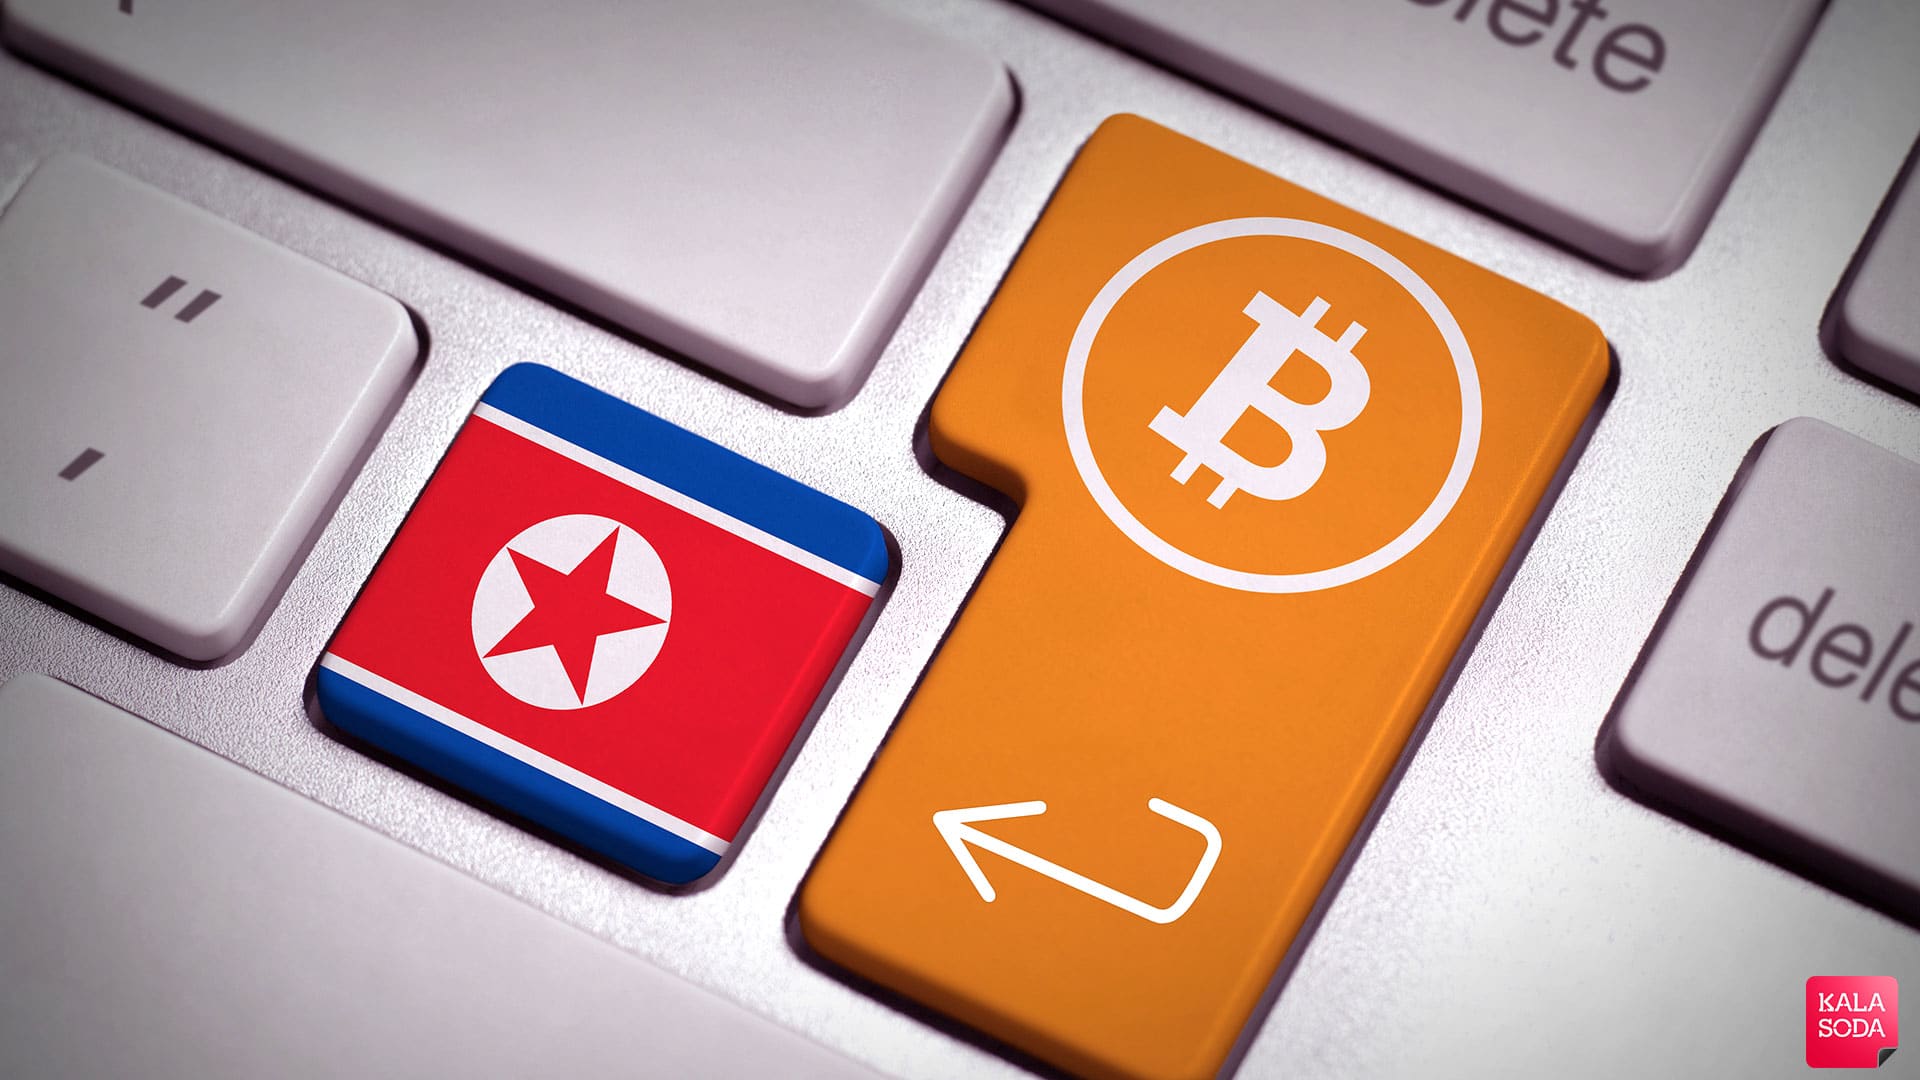 کره شمالی متهم به سرقت ارز مجازی|کالاسودا